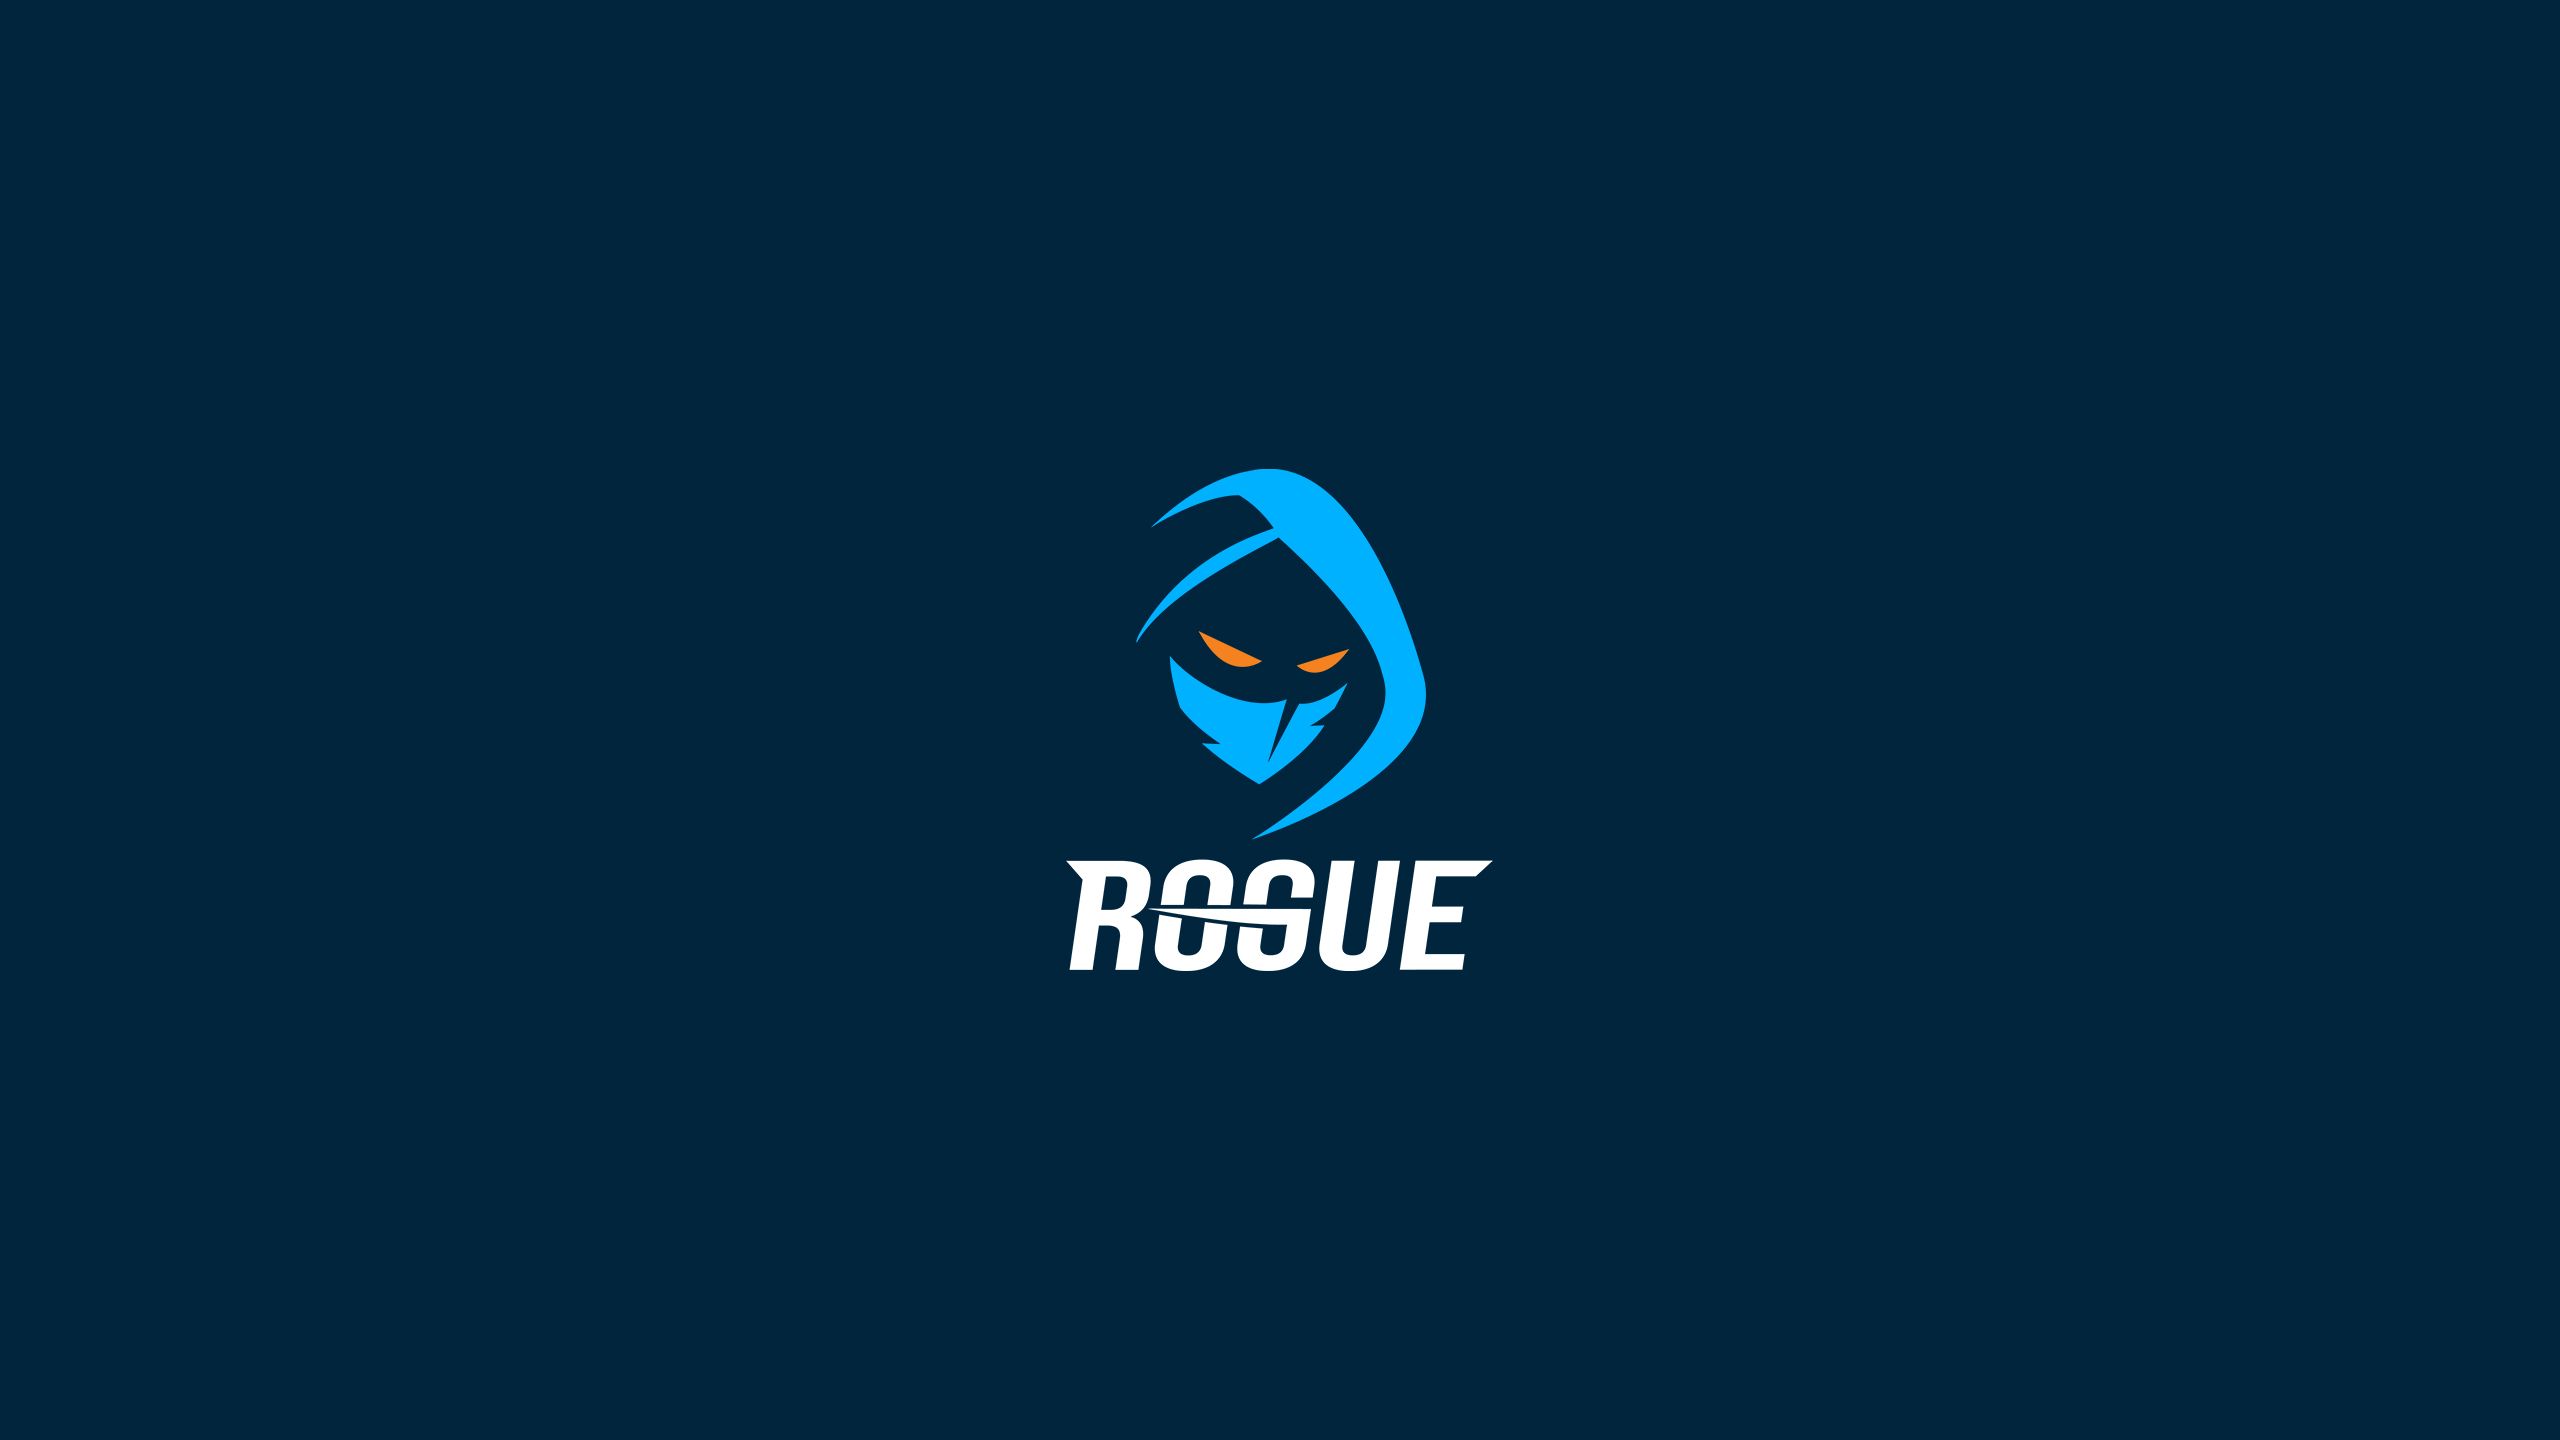 Rogue первой гарантировала участие на Worlds 2021